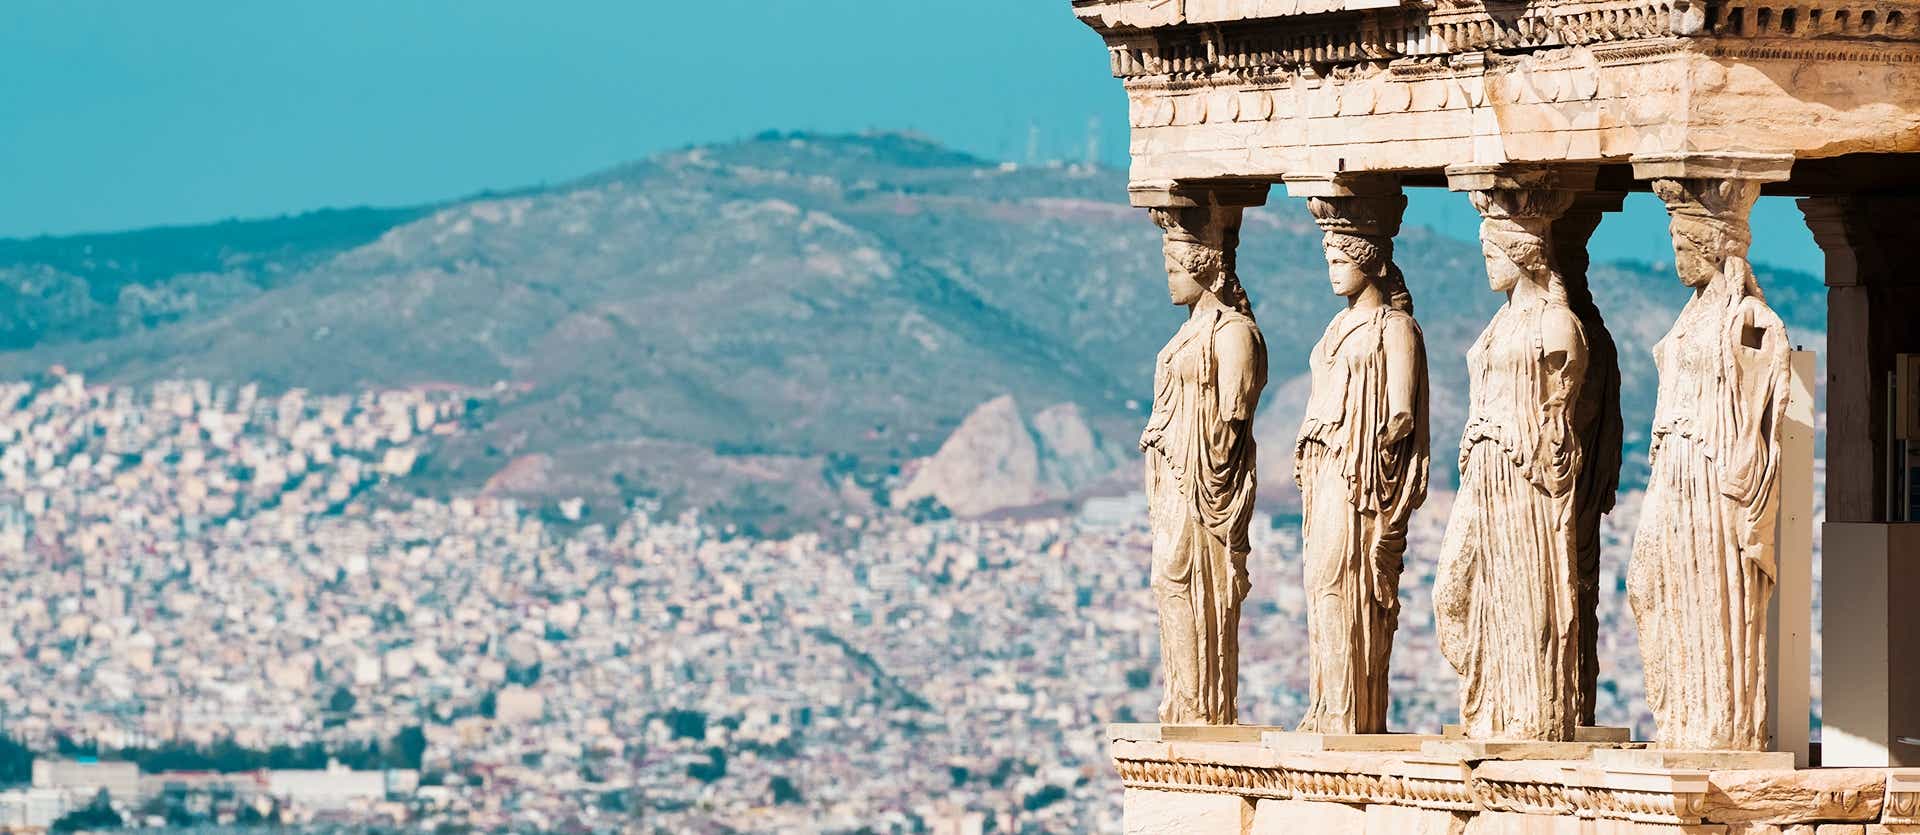 Las Cariátides <span class="iconos separador"></span> Acrópolis de Atenas 